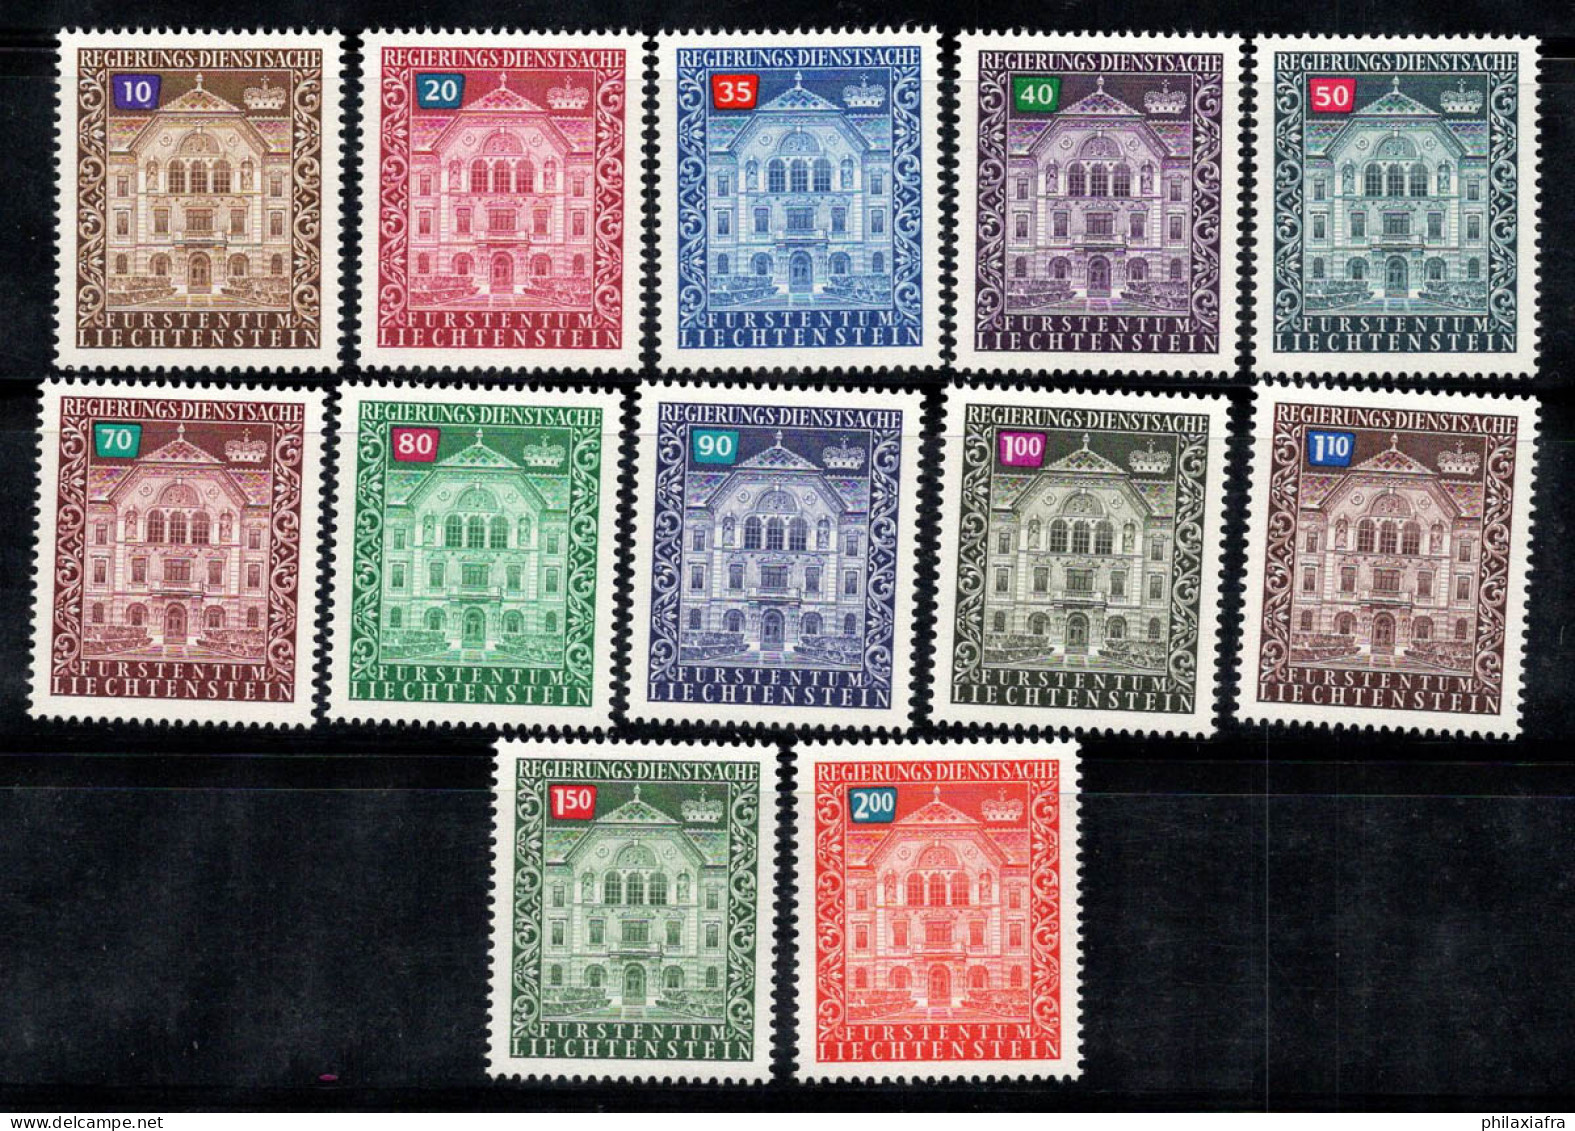 Liechtenstein 1976 Mi. 57-68 Neuf ** 100% Service Édifice Gouvernemental - Dienstmarken